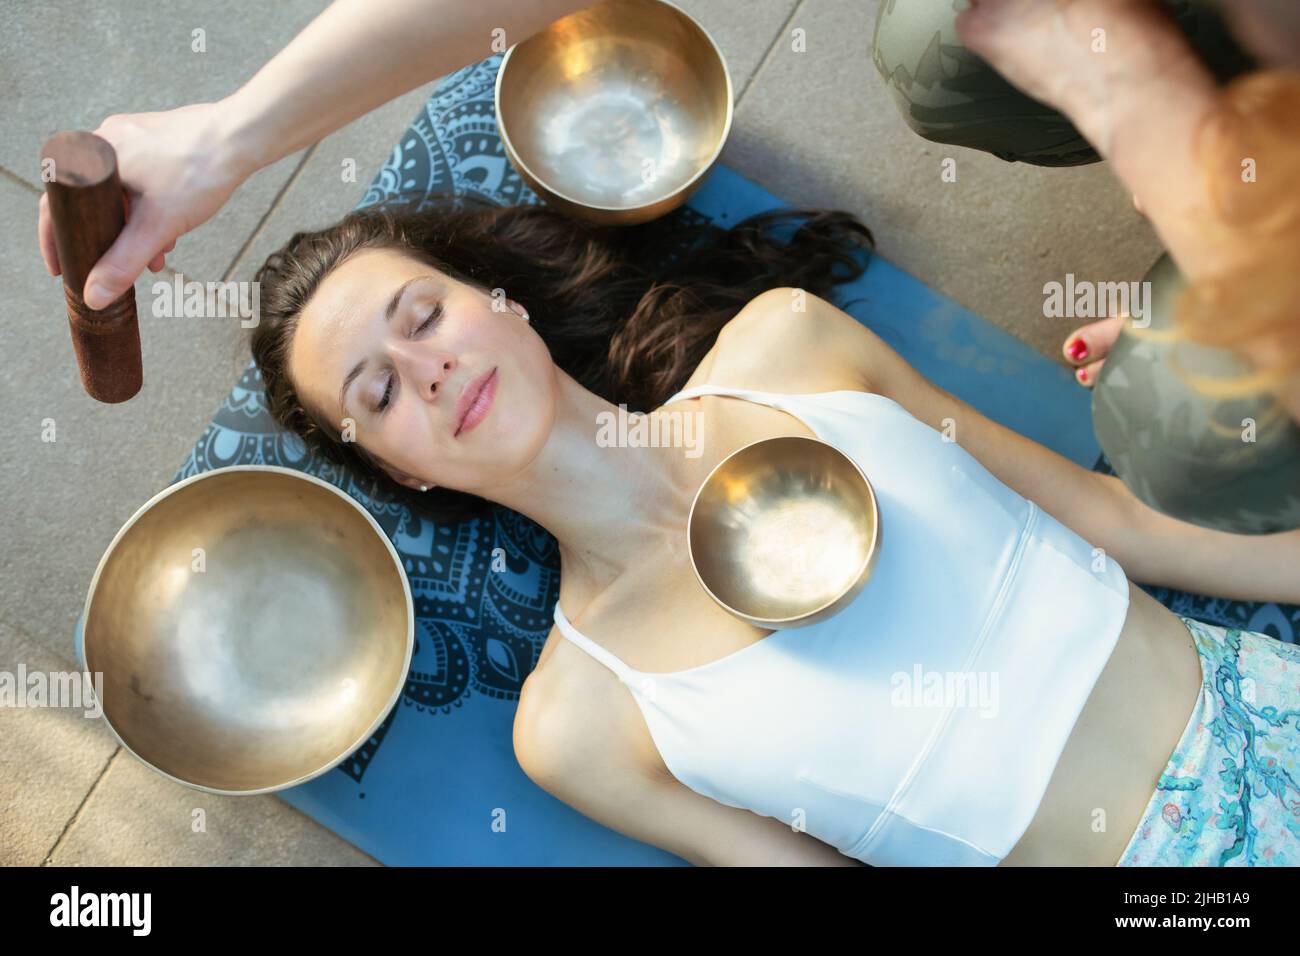 Concepto de yoga, meditación y terapia de sonido. Hermosa joven caucásica rodeada de cuencos y instrumentos de canto tibetano de cobre. Foto de stock